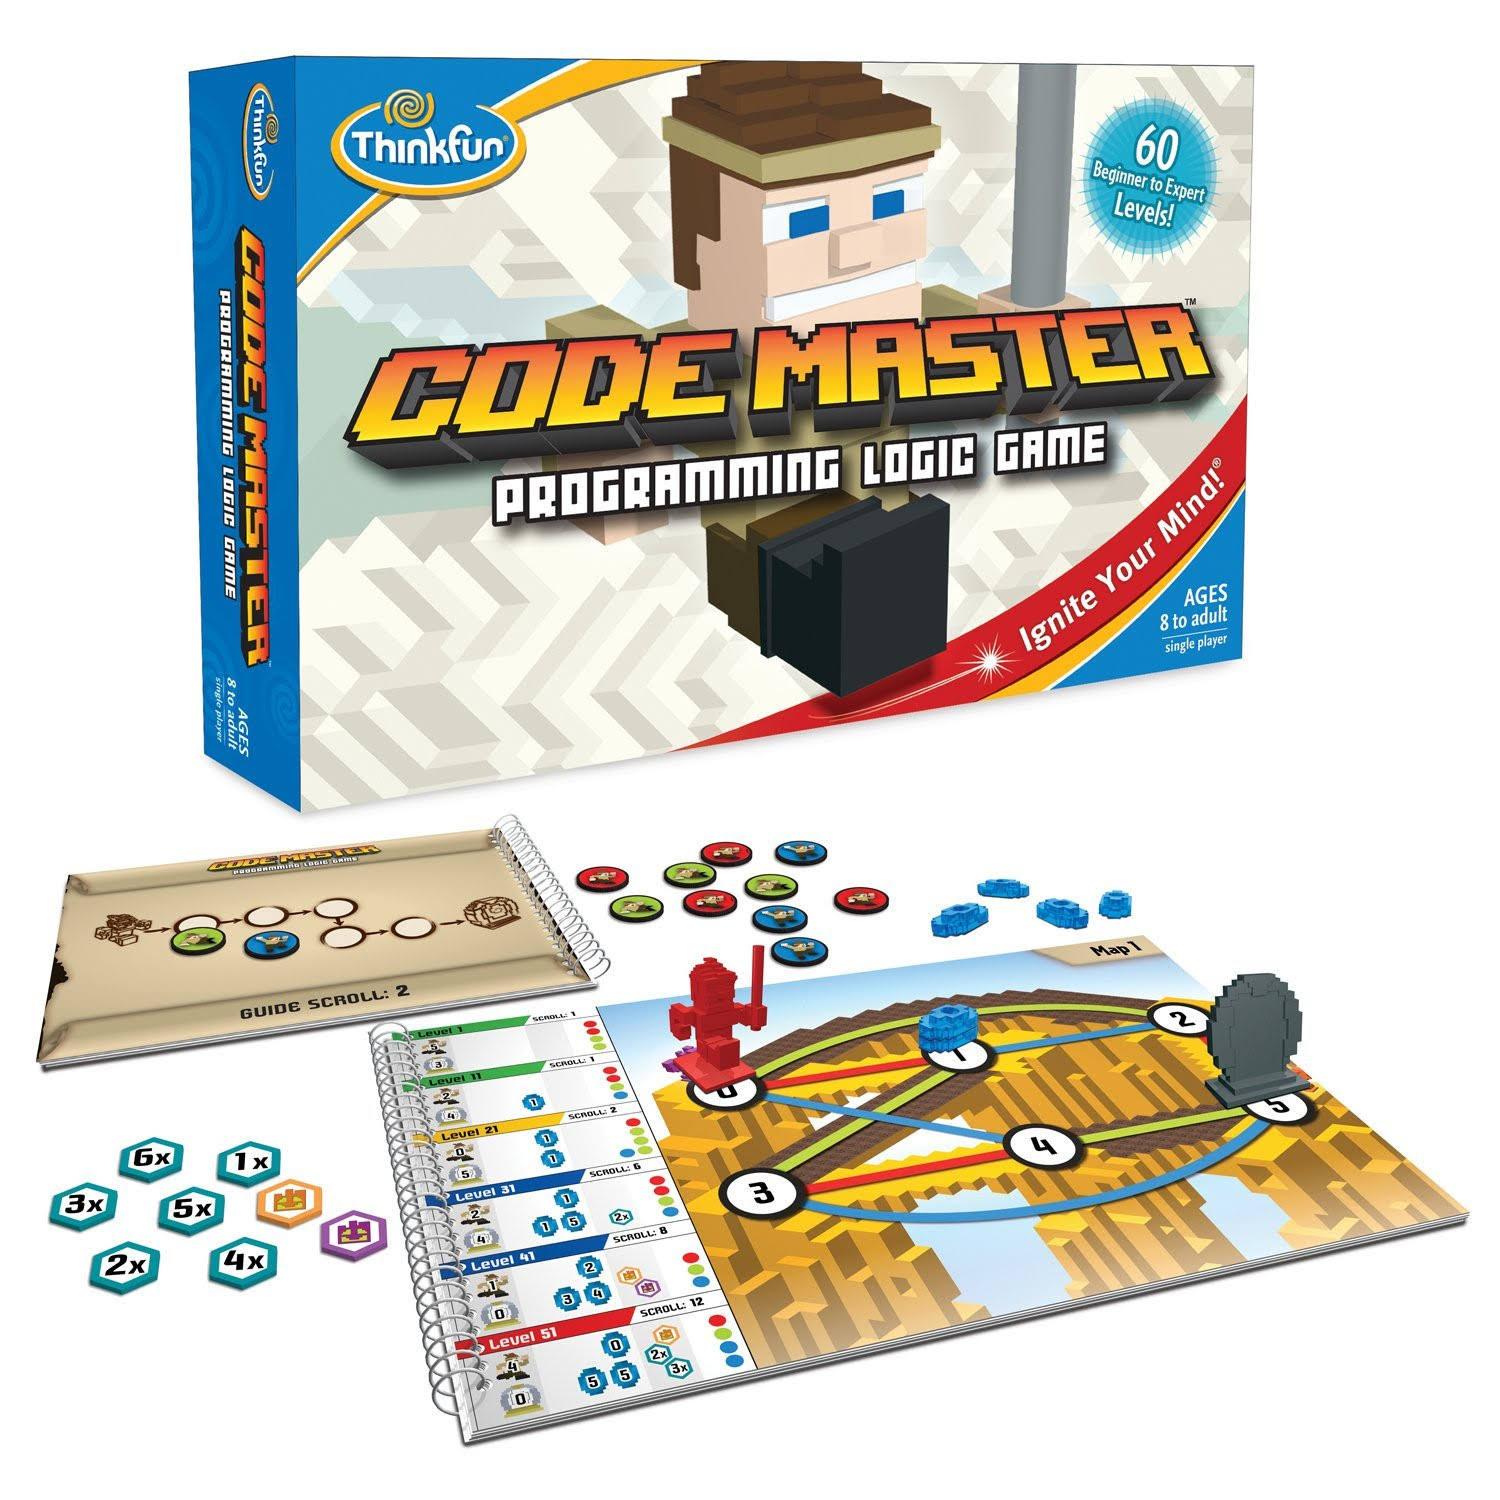 Code Master Programming Logic Board Game